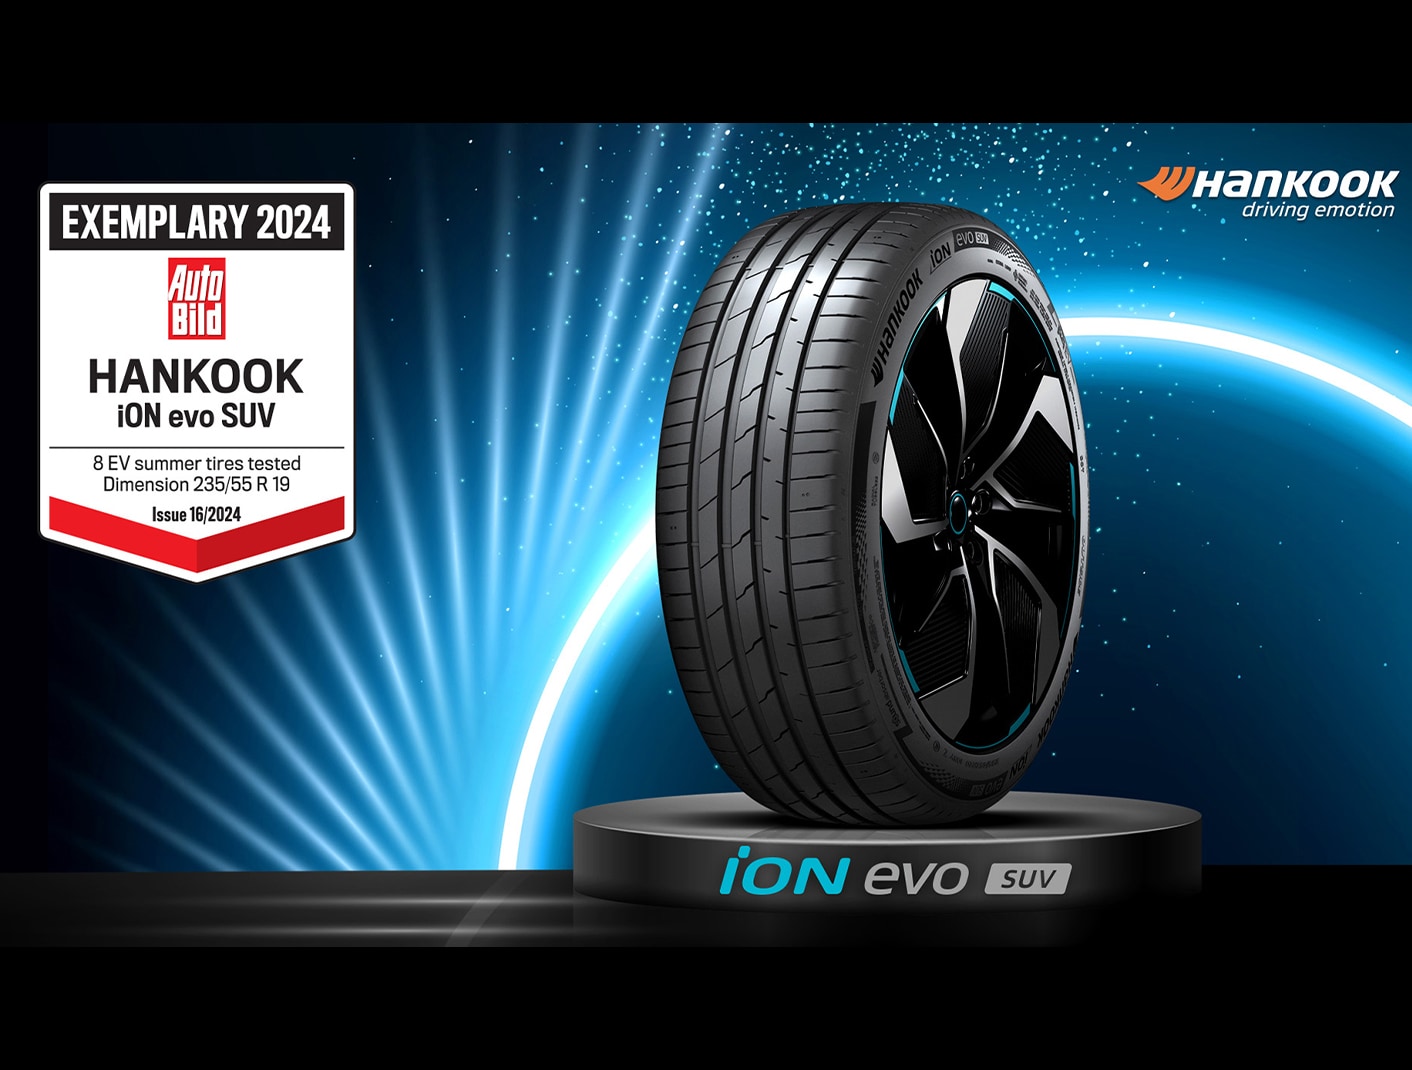    Hankook Tire y su llanta exclusiva para vehículos eléctricos: iON evo SUV, obtiene la calificación Ejemplar más alta de Auto Bild.